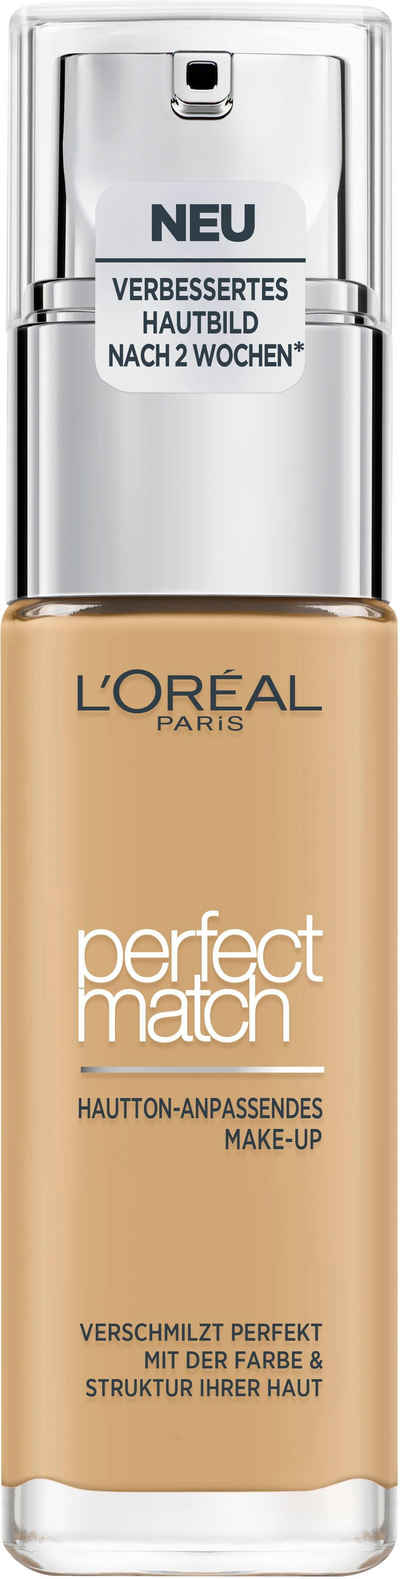 L'ORÉAL PARIS Foundation Perfect Match Make-Up